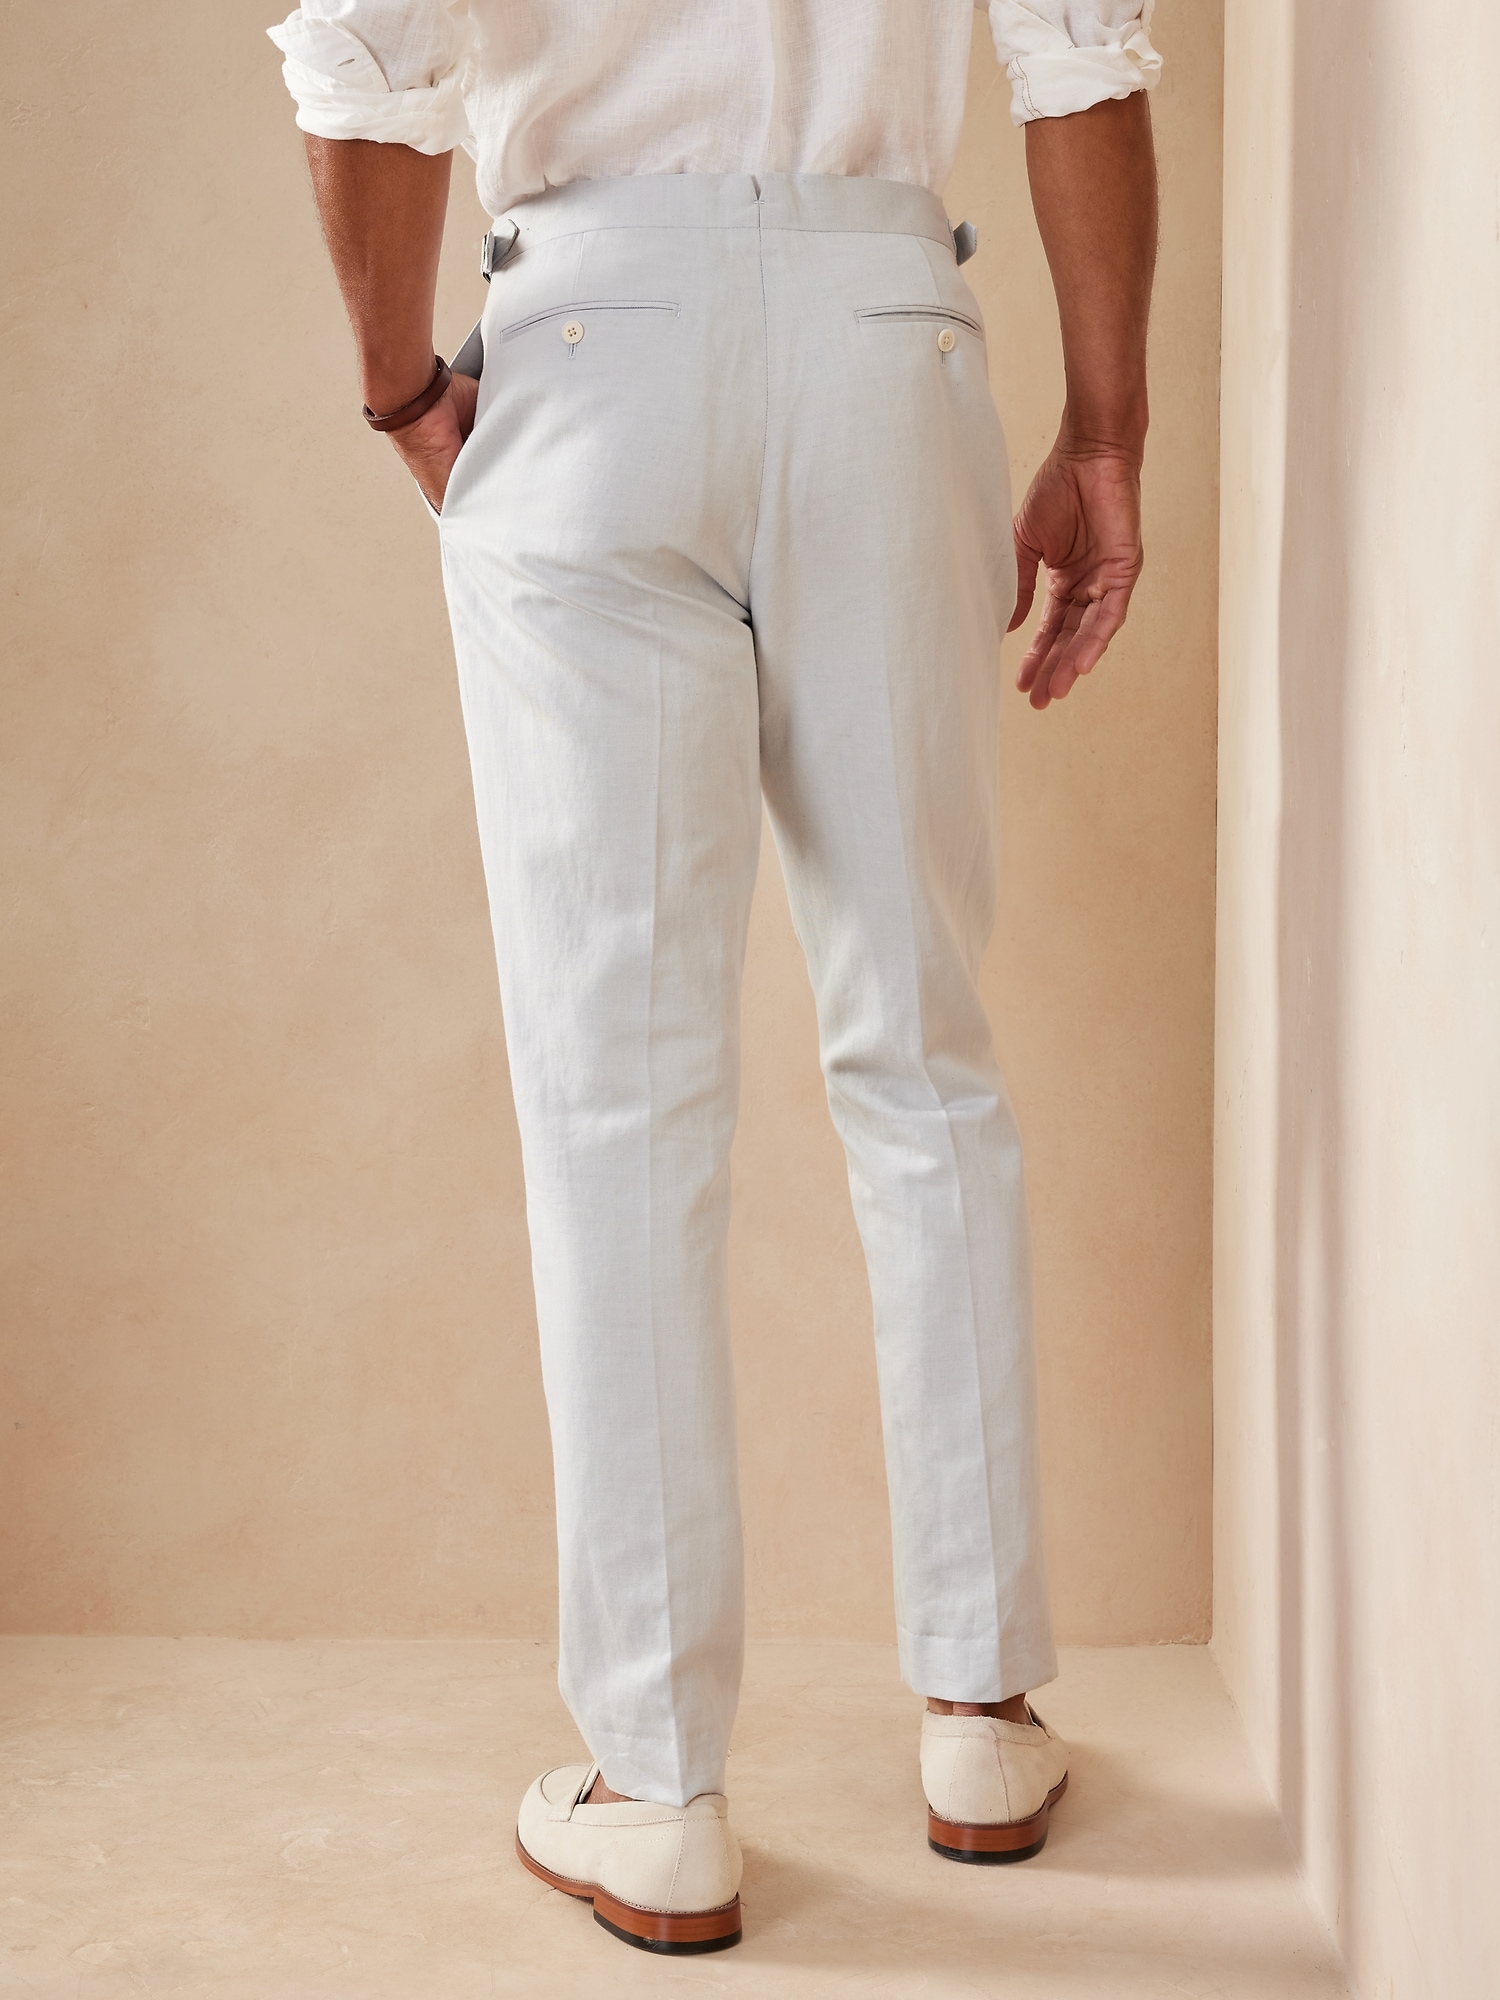 Men's Navy Slim Fit Dinner Suit Pants With Belt Loops